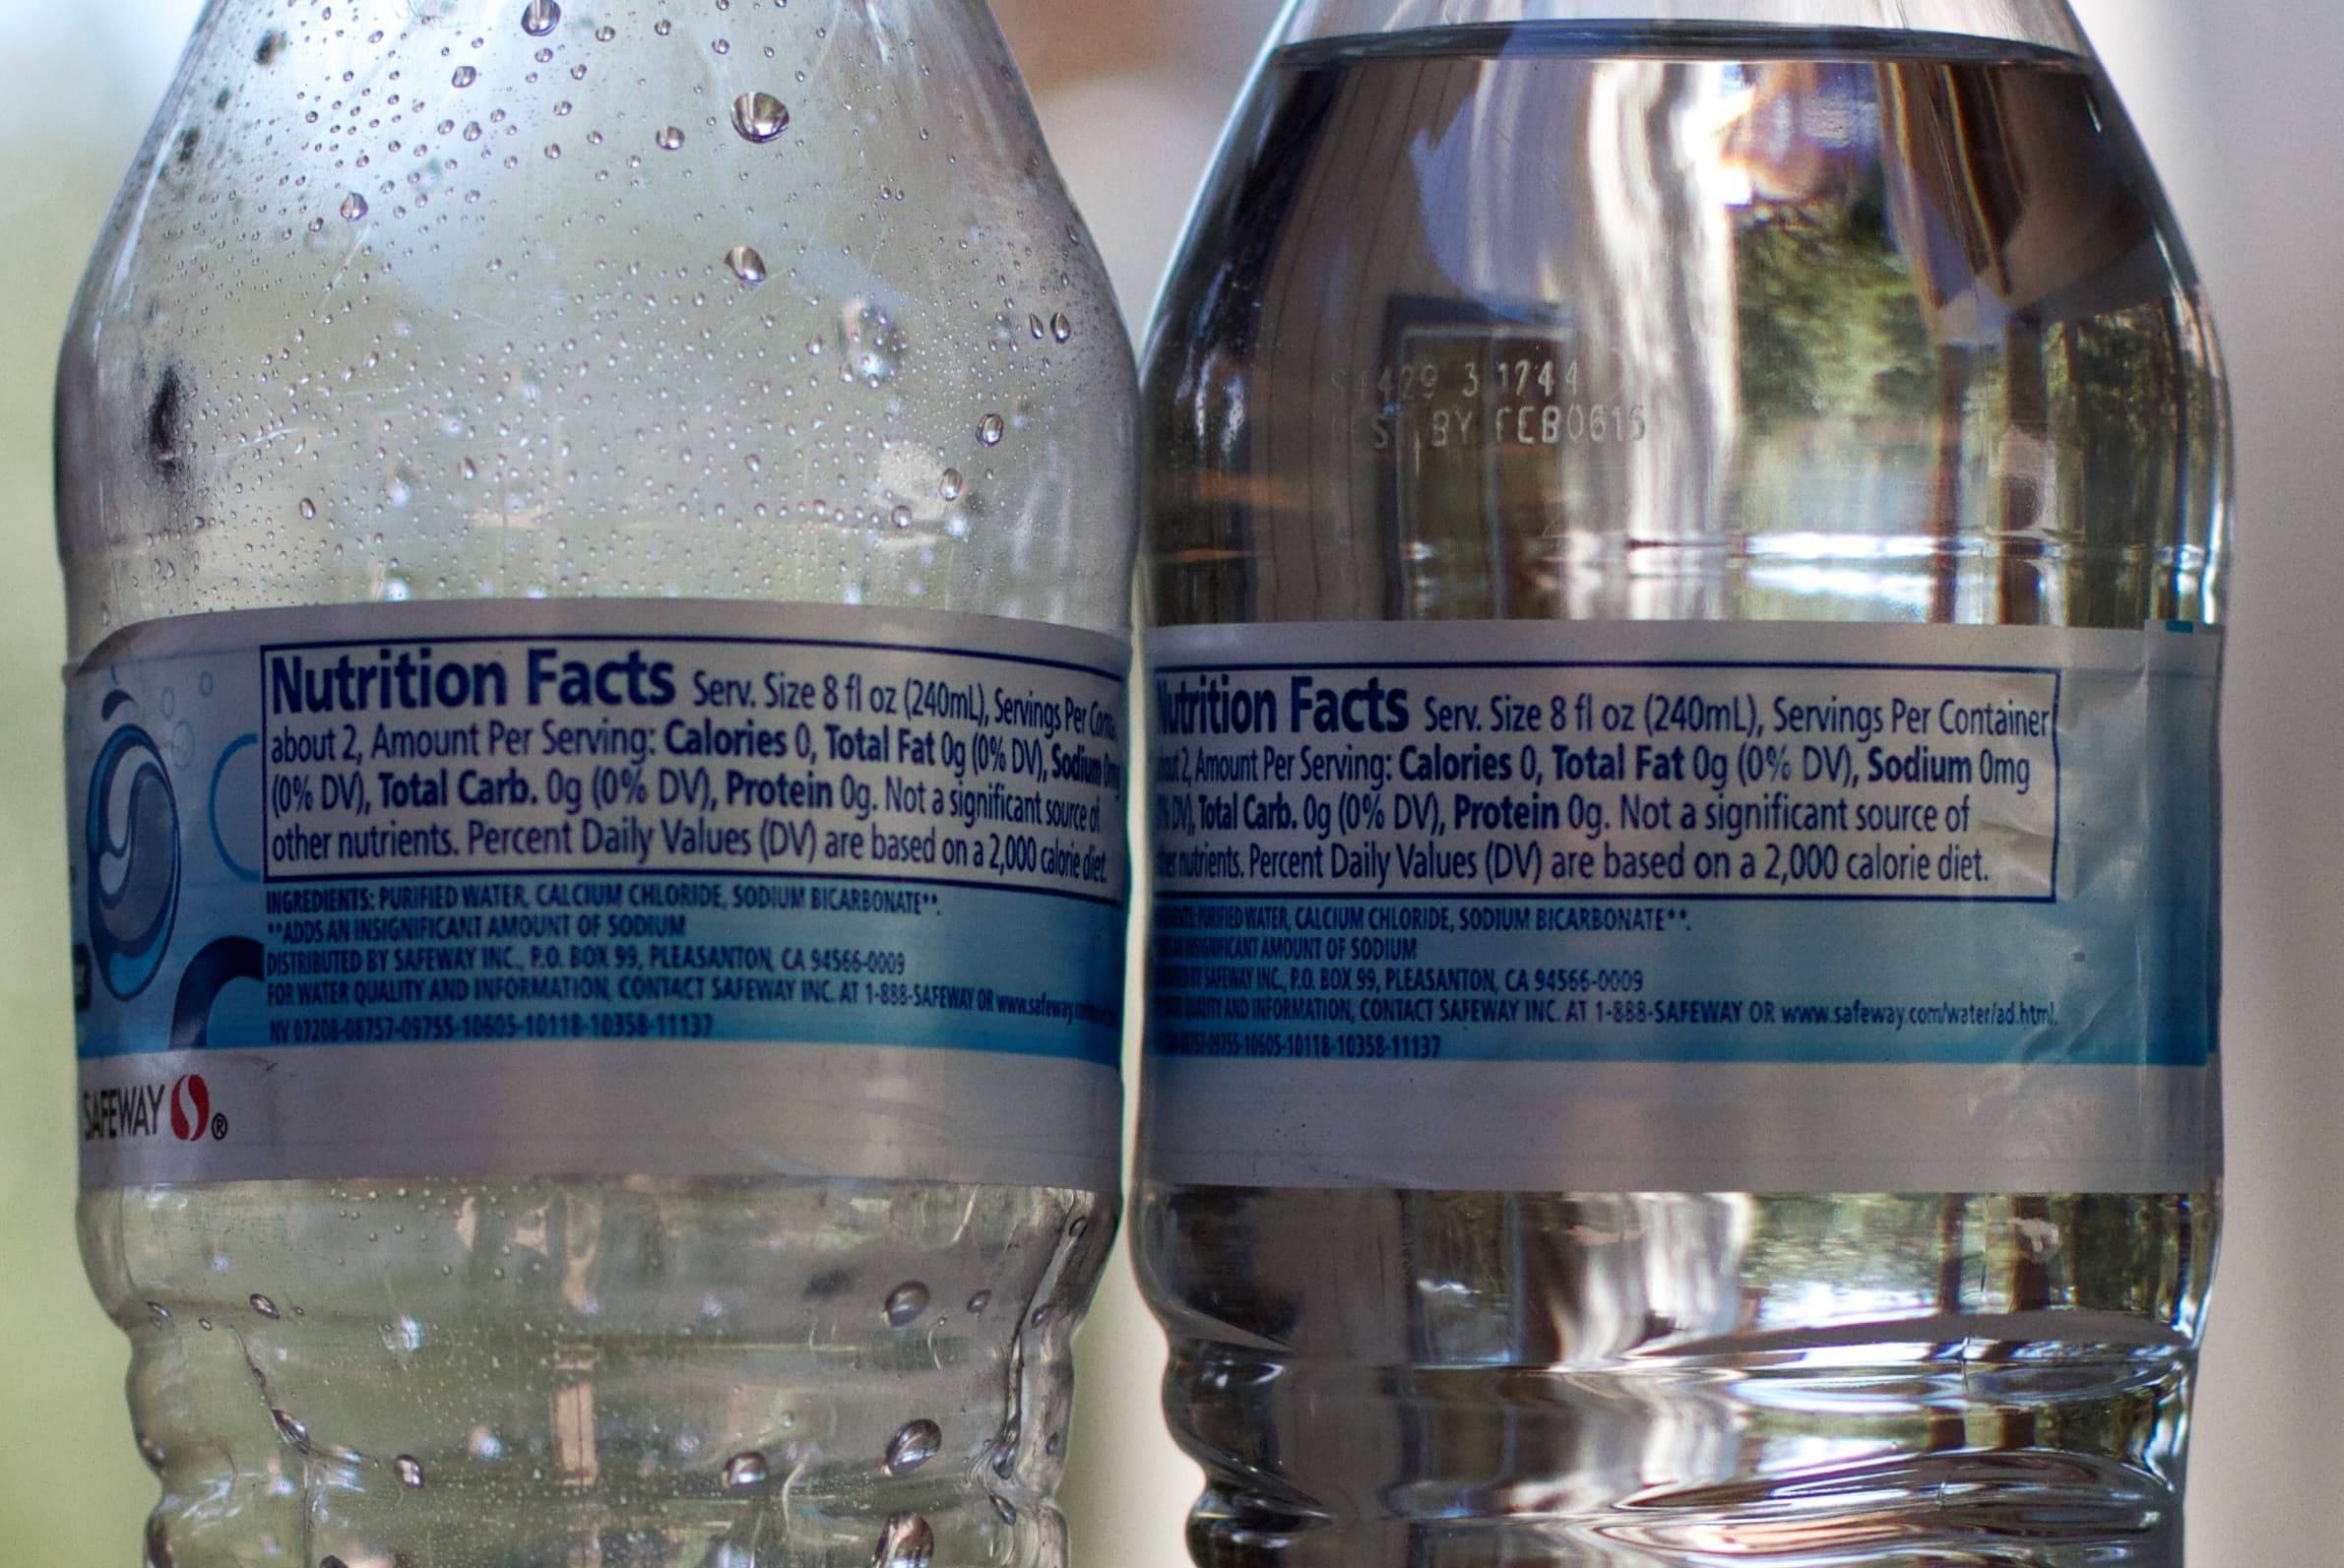 Можно ли беременным пить газированную воду